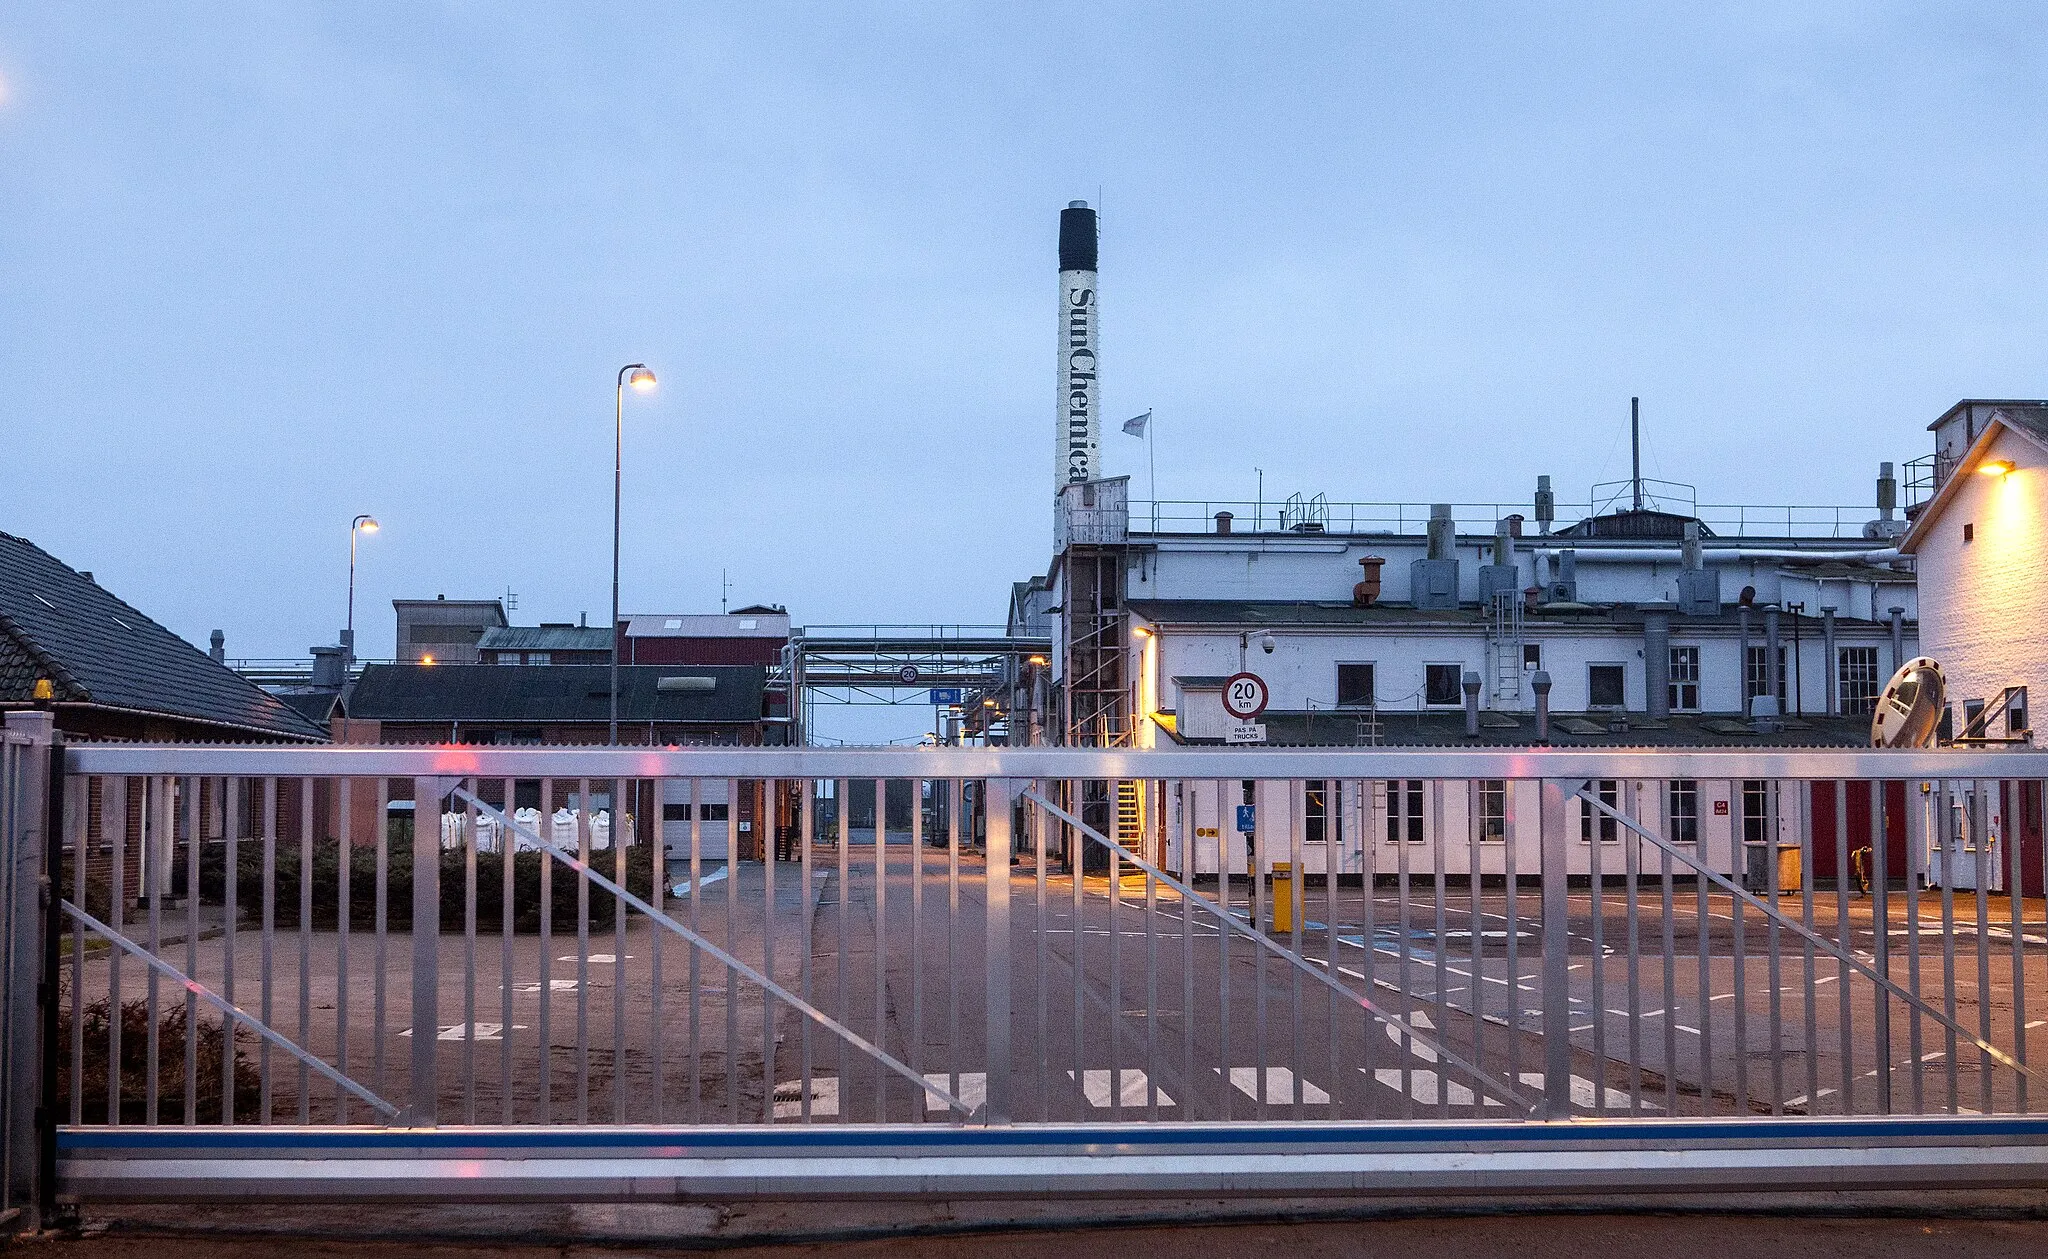 Photo showing: Kemisk Værk i Køge grundlades 1934 norr om staden vid Køge Bugt. 1984 bytte verksamheten namn till Sun Chemical A/S och är ett helägt dotterbolag till Sun Chemical.
Från början producerades växtskyddsmedel och pigmenter och anläggningen hade tidigare stora problem med föroreningar knutet till spillvatten från anläggningen. Under 1980-talet uppges företaget ha gjort stora investeringar i reningsutrustning samtidigt som produktionen av växtskyddsmedel lades ned. 
Kemisk Værk Køge A/S köpte 1971 det skånska kemiföretaget BT-Kemi som några år senare orsakade en stor giftskandal med nedgrävda tunnor med växtgift. 1976 försattes BT Kemi i konkurs och den 22 februari 1979 sprängdes fabriken i luften. Fortfarande uppges det finnas spår av gift kvar i marken där BT Kemi fanns.
Photo: News Øresund - Johan Wessman
© News Øresund(CC BY 3.0)

Detta verk av News Øresund är licensierat under en Creative Commons Erkännande 3.0 Unported-licens (CC BY 3.0). Bilden får fritt publiceras under förutsättning att källa anges. The picture can be used freely under the prerequisite that the source is given. News Øresund, Malmö, Sweden.www.newsoresund.org.News Øresund är en oberoende regional nyhetsbyrå som ingår i projektet Øresund Media Platform som drivs av Øresundsinstituttet i partnerskap med Lunds universitet och Roskilde Universitet och med delfinansiering från EU (Interreg IV A Öresund) och 14 regionala; icke kommersiella aktörer.